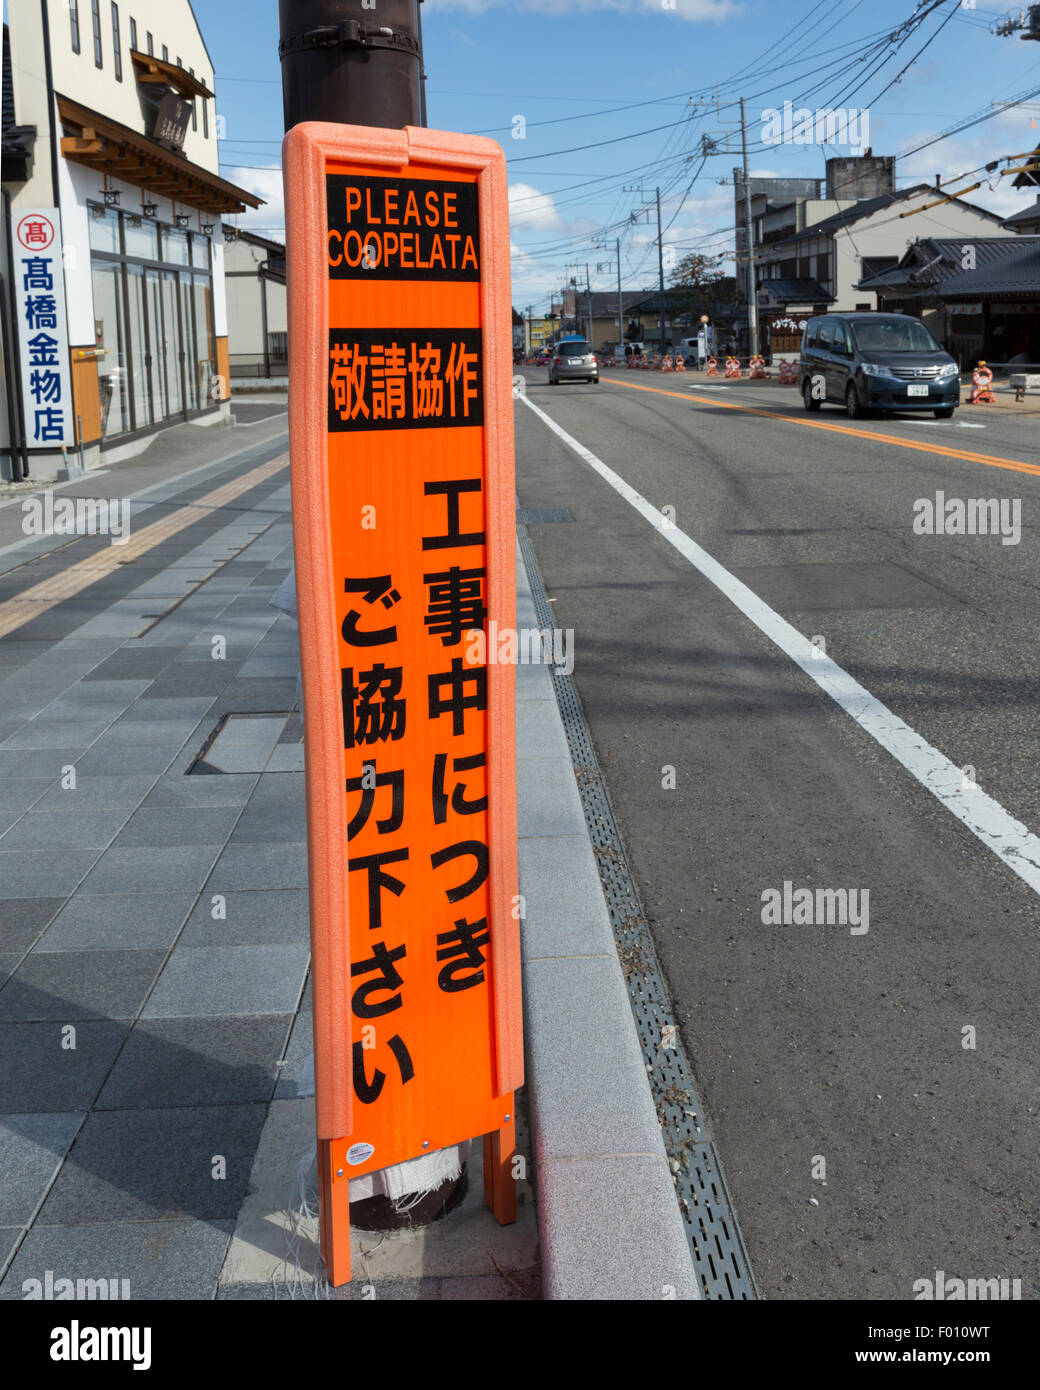 Road sign in Nikko Japon avec 'amusant' traduction en anglais Coopelata Veuillez Banque D'Images